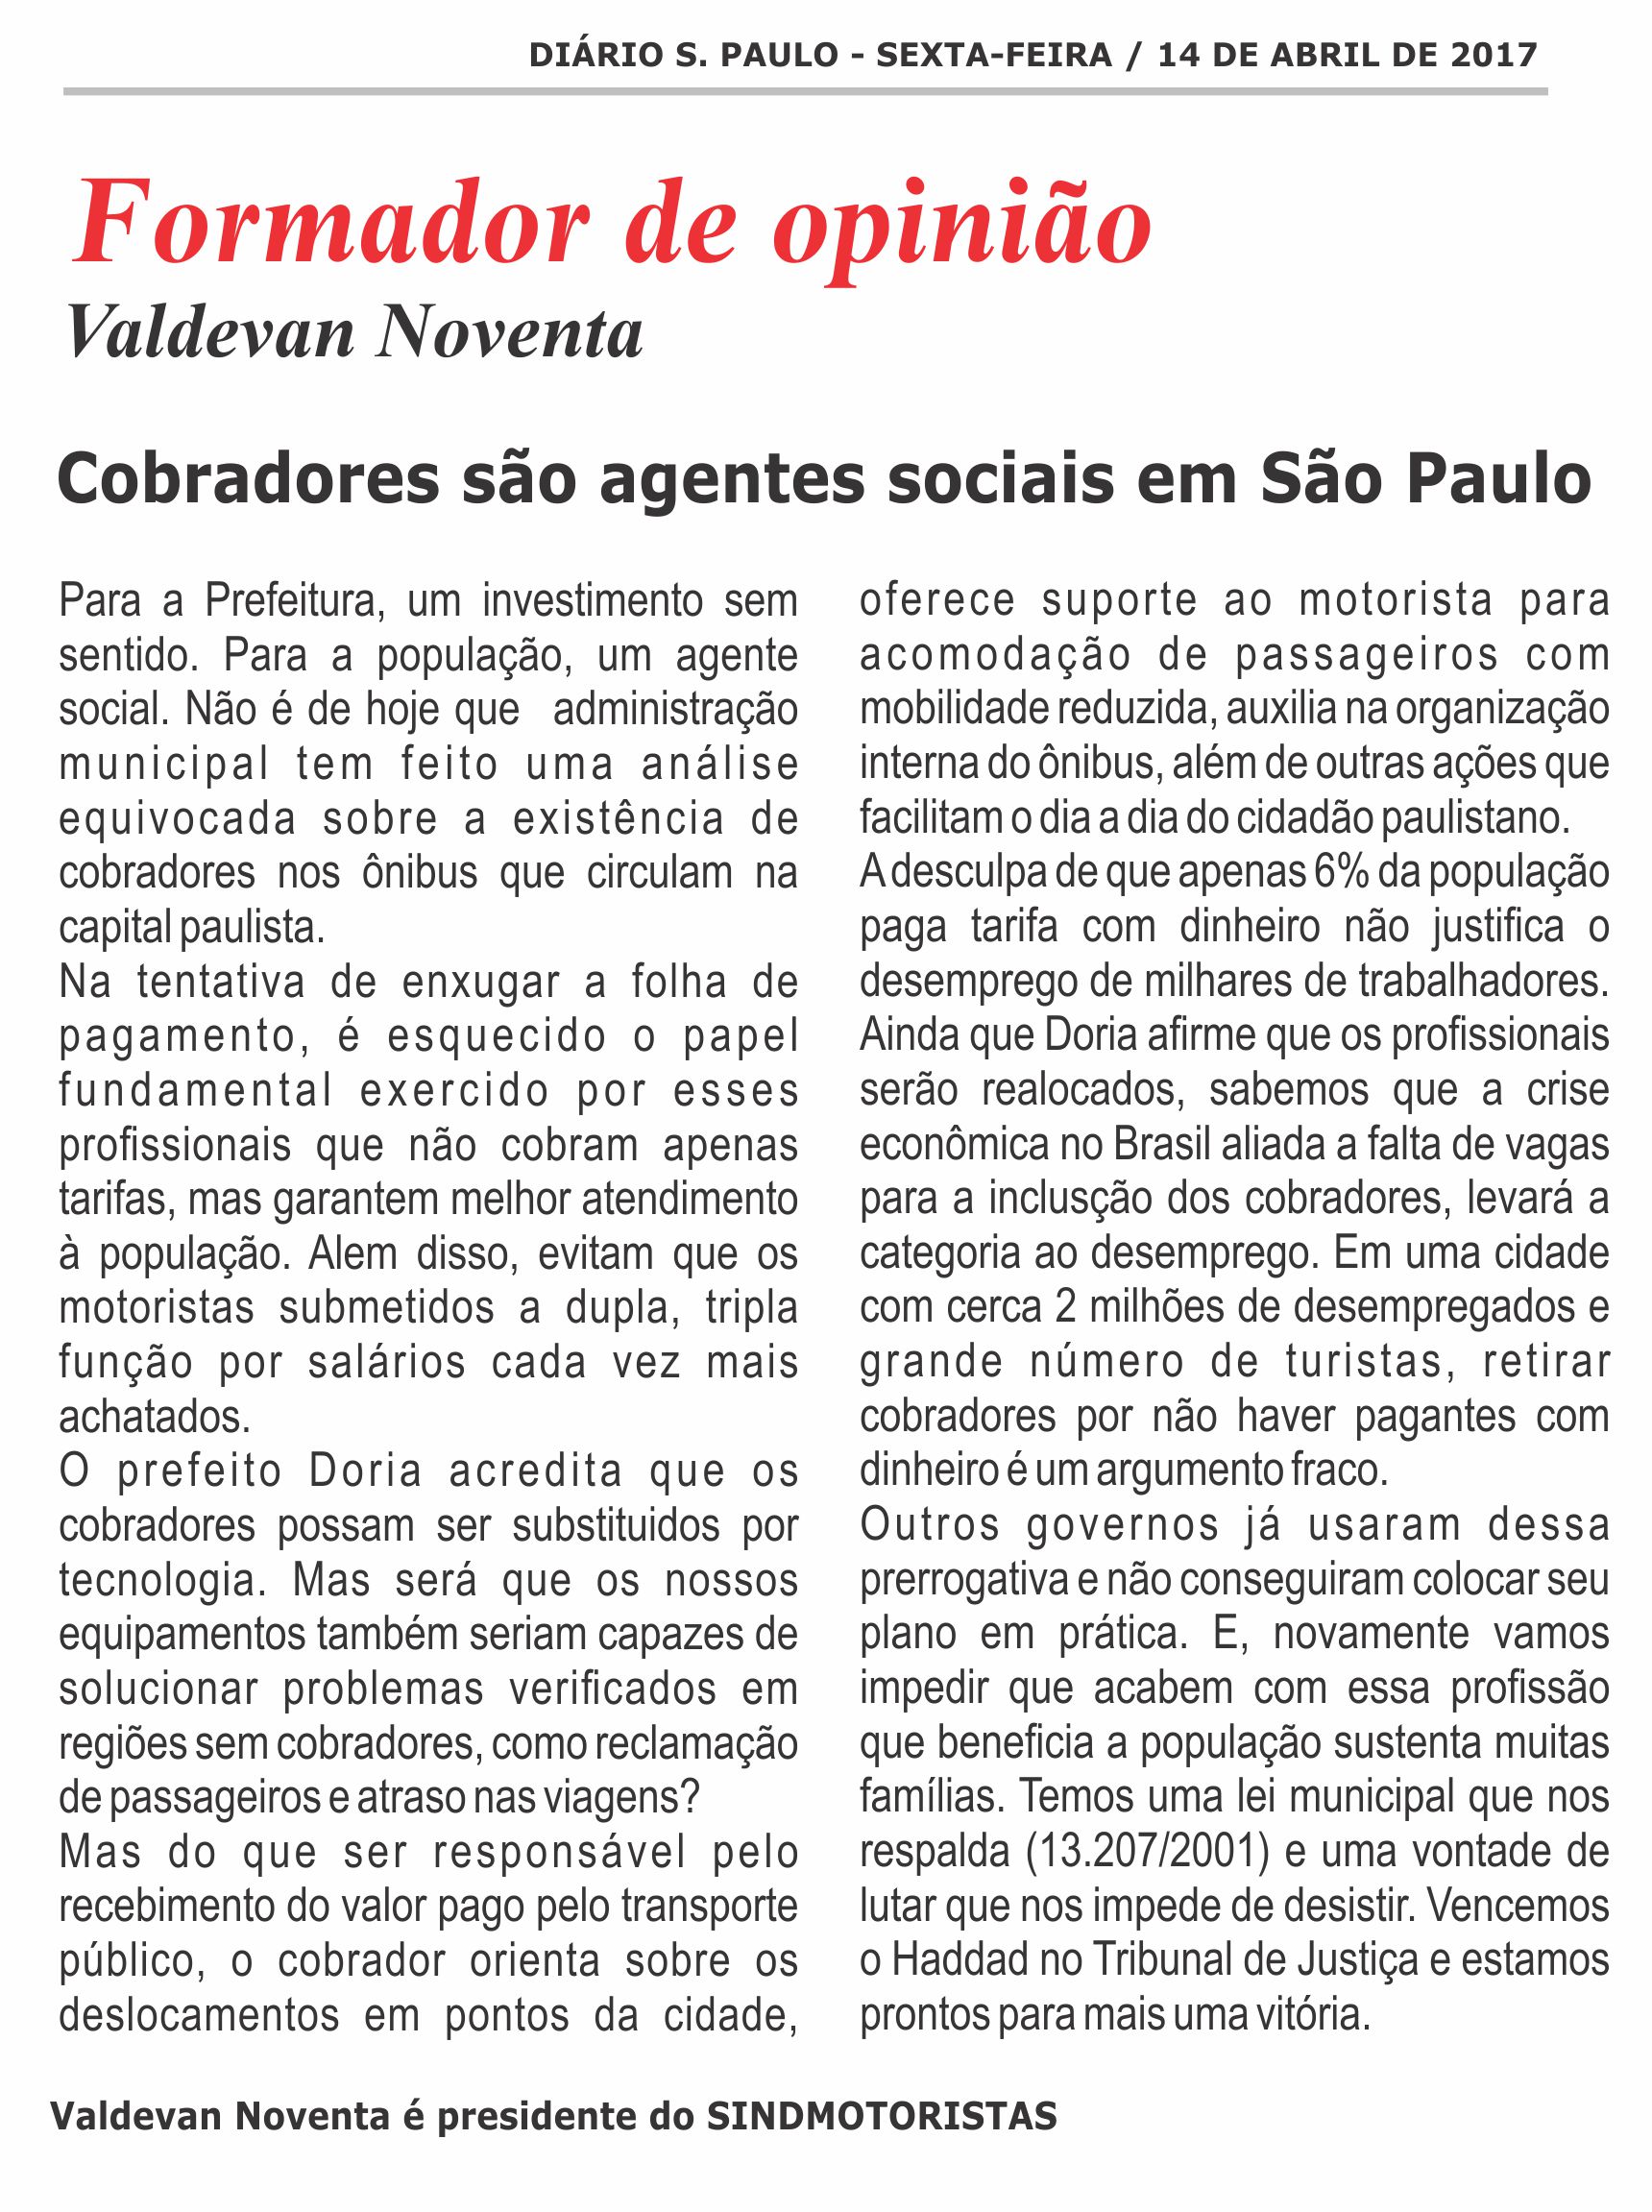 materia_diario_de_sao_paulo.jpg